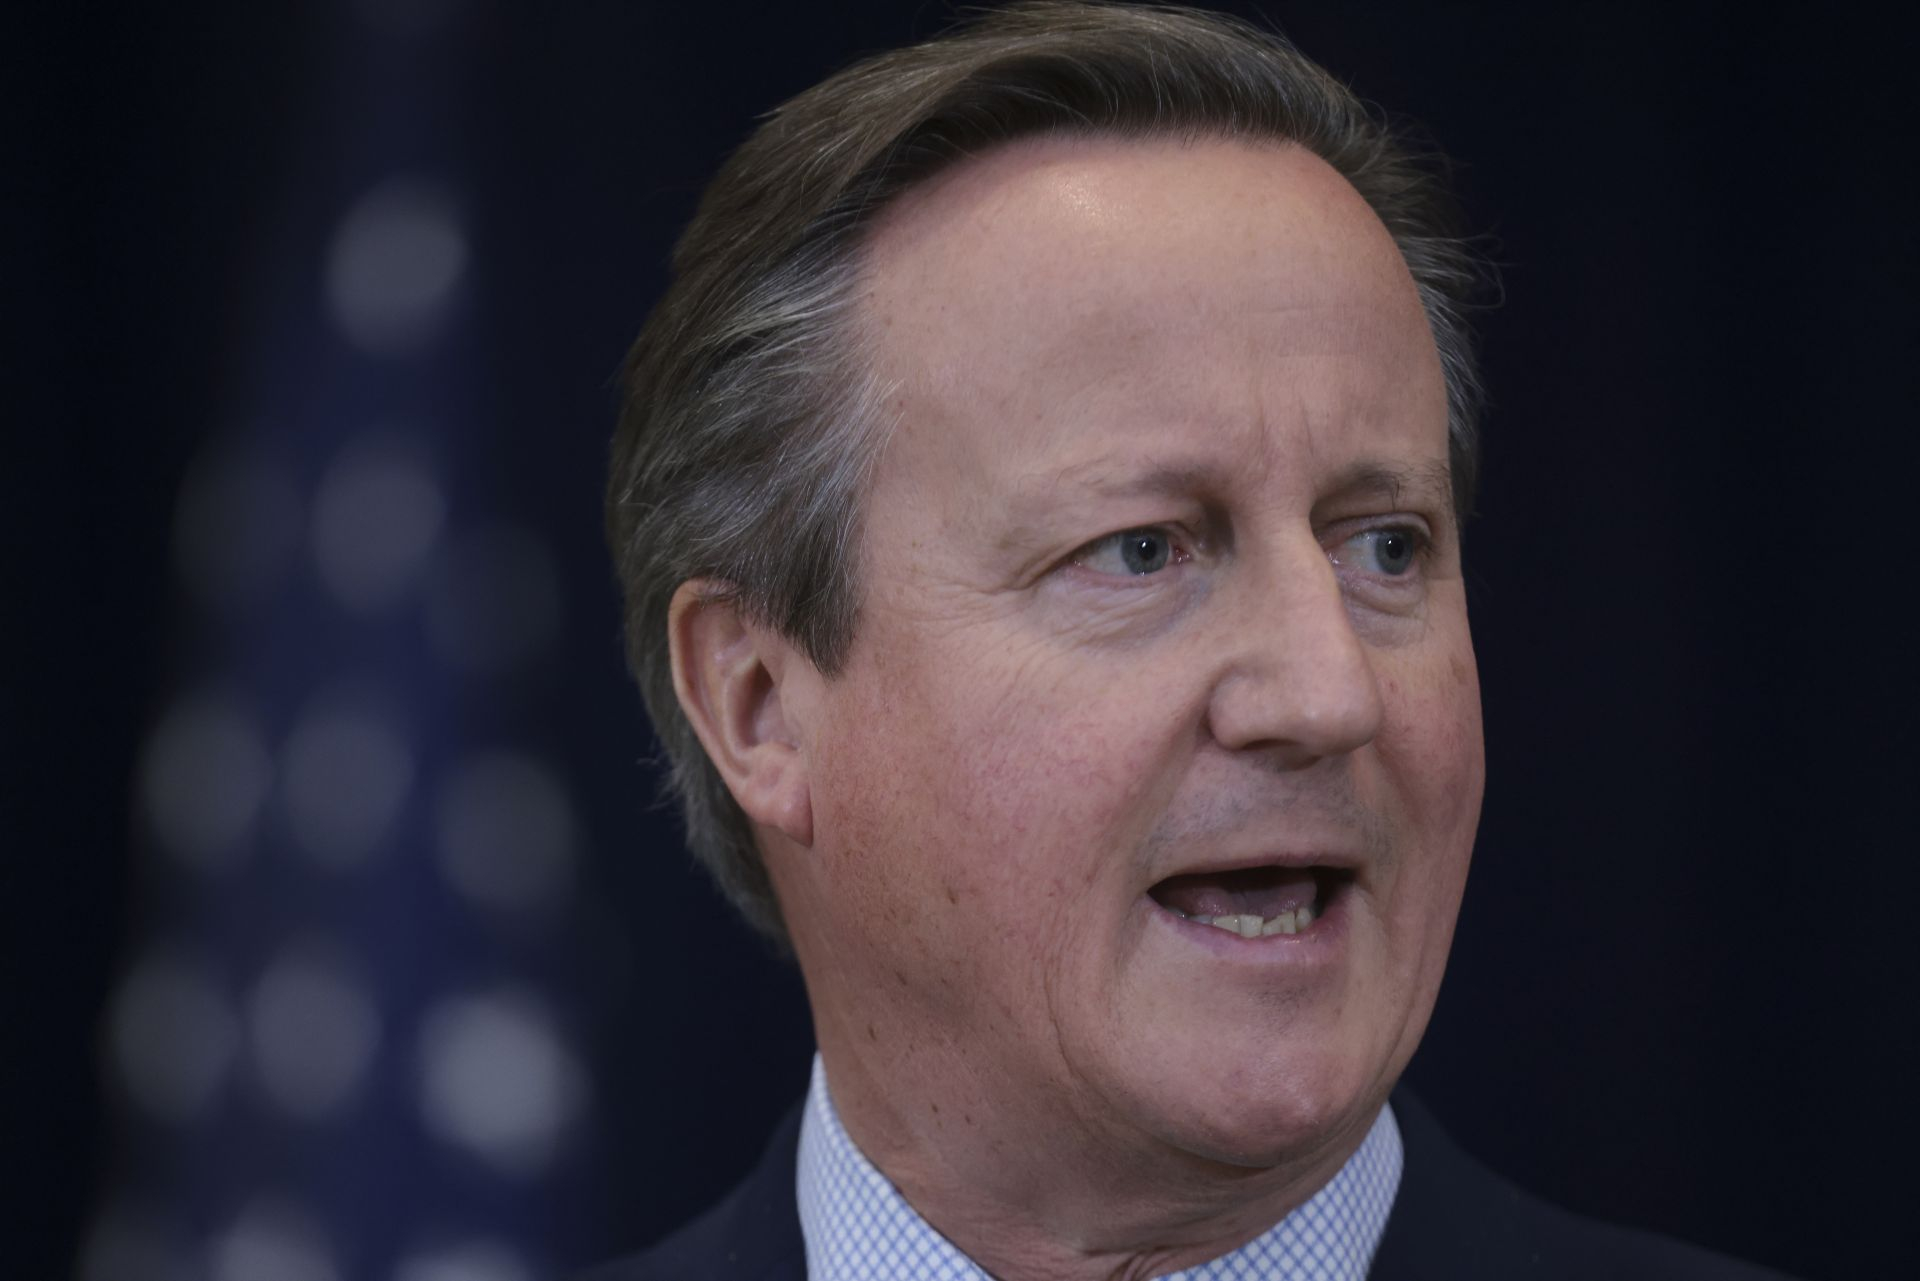 David Cameron: Za 10 proc. budżetu obronnego USA zniszczono połowę ...